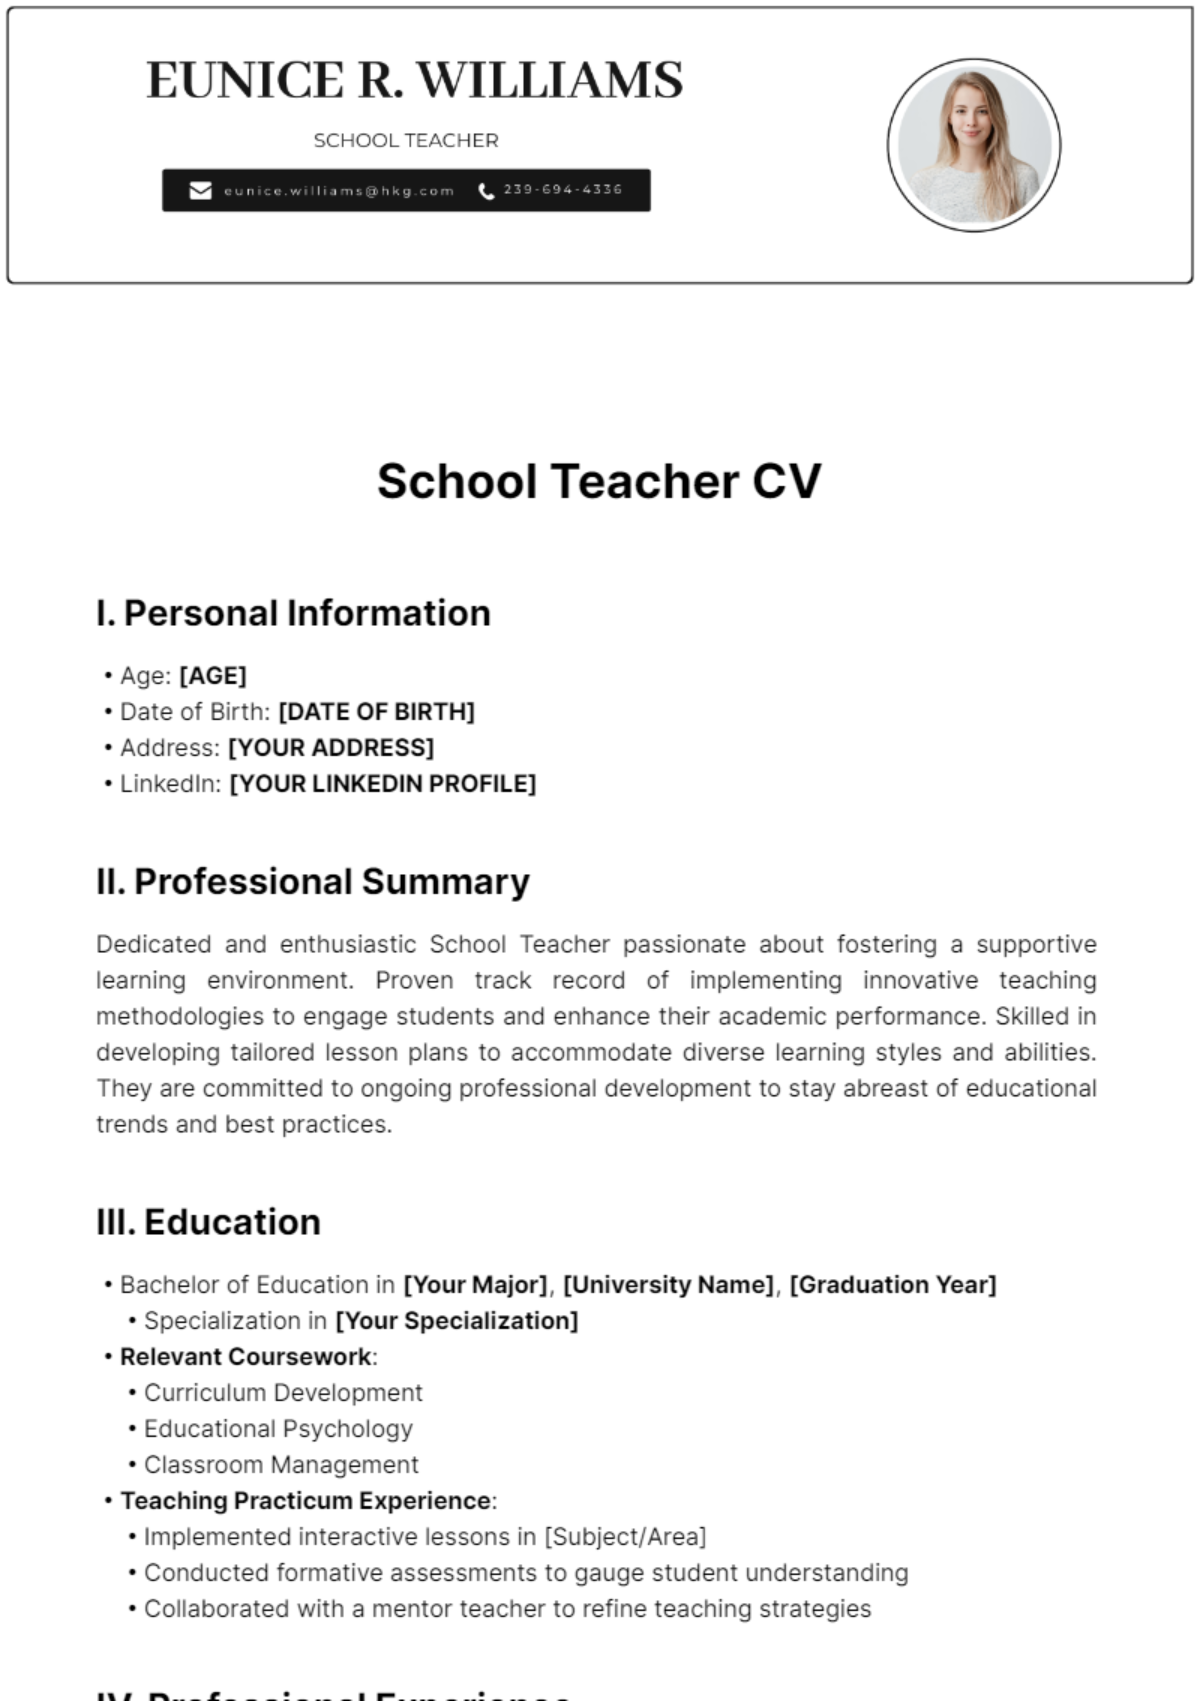 School Teacher CV Template